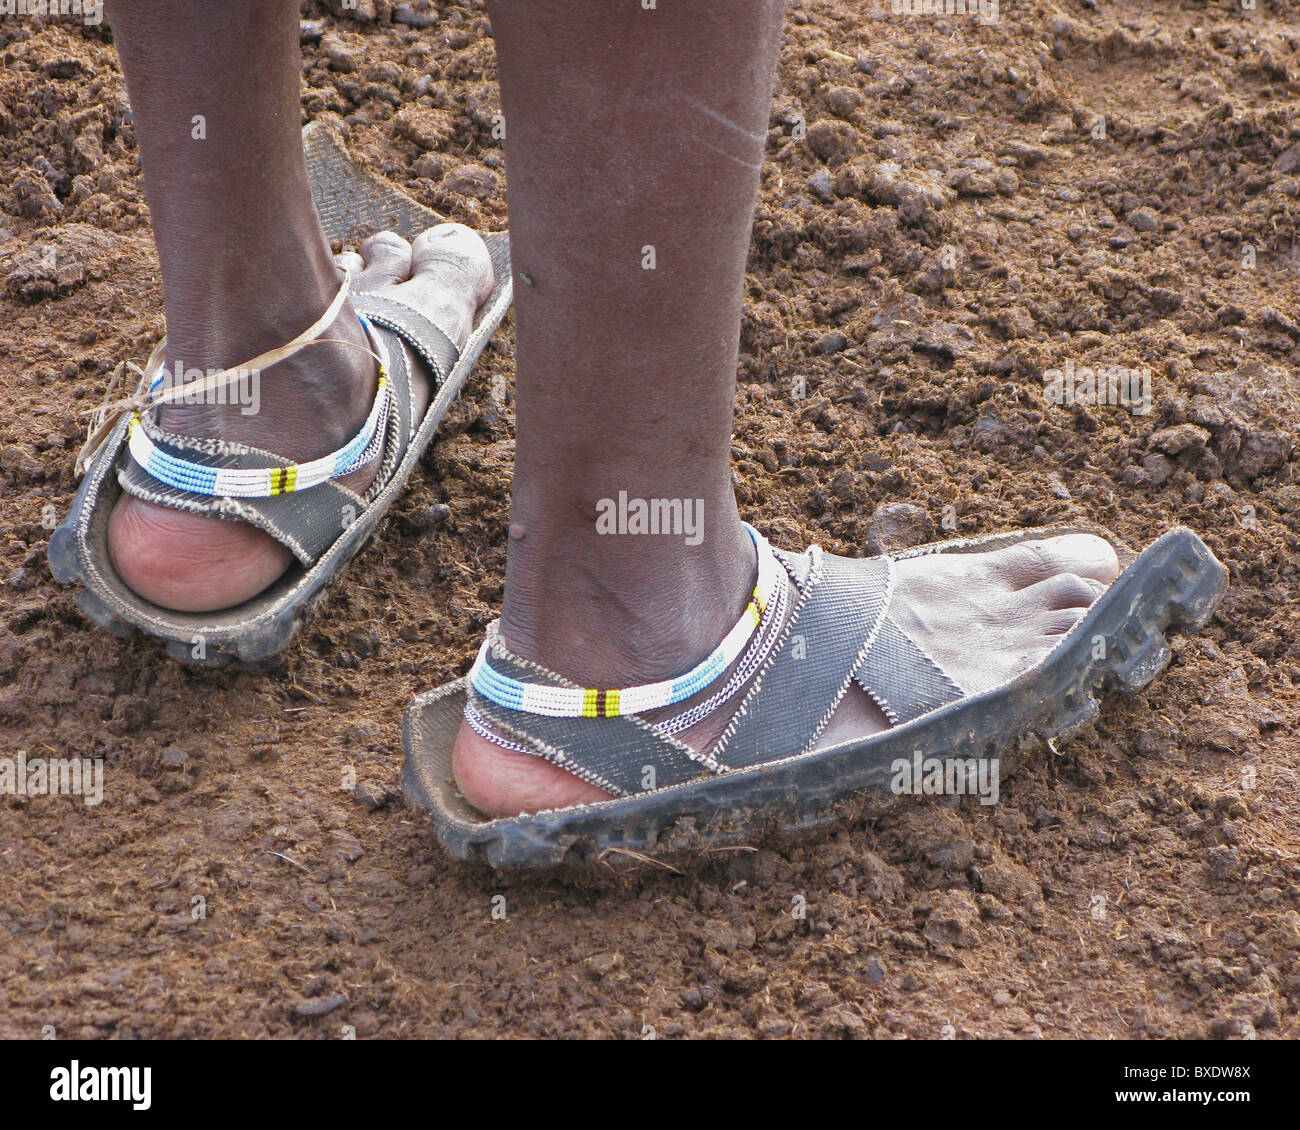 Ein Massai-Krieger trägt Sandalen aus recycelten Motorrad-Reifen, die nur  Schuhe, die sie haben. Andere gehen barfuß Stockfotografie - Alamy